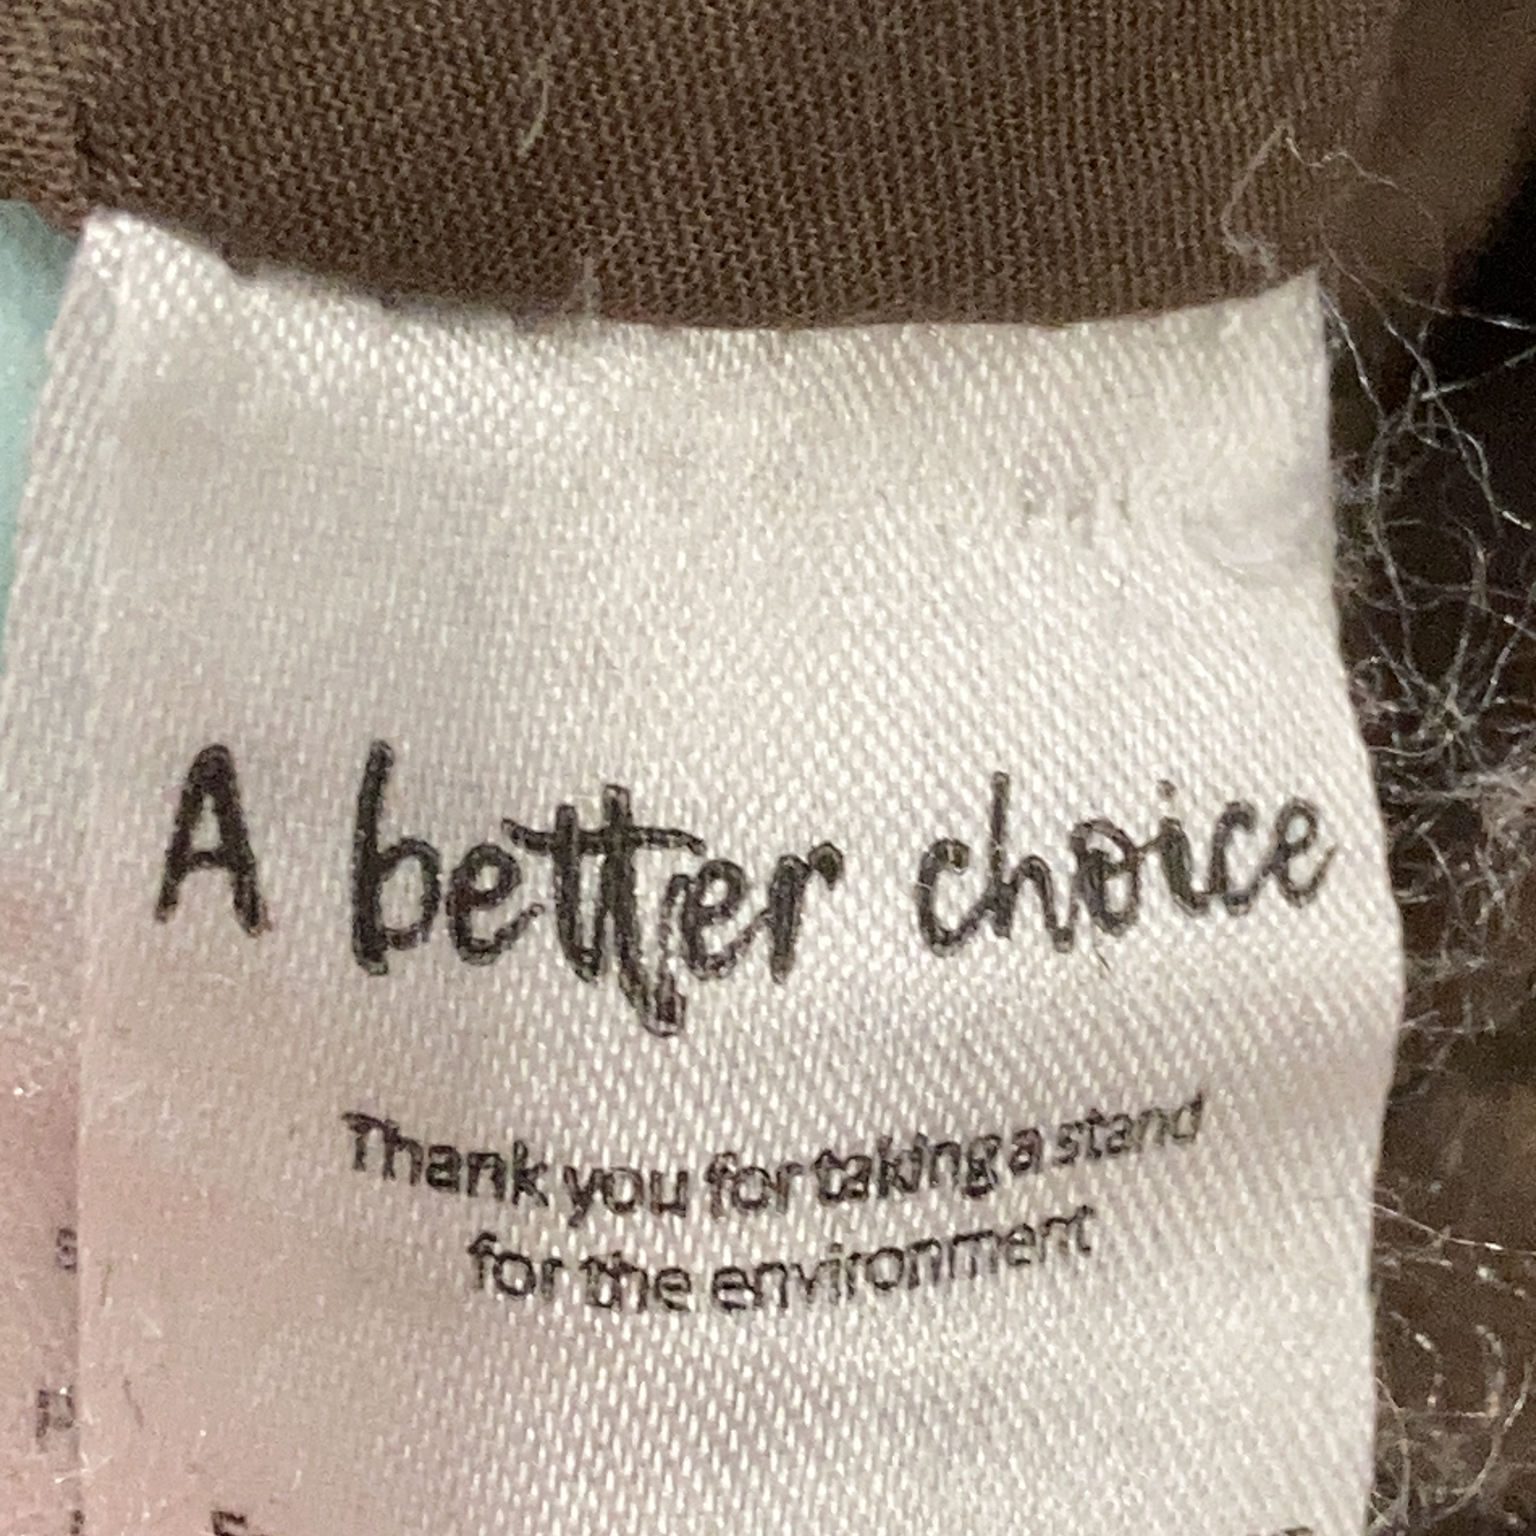 A Better choice